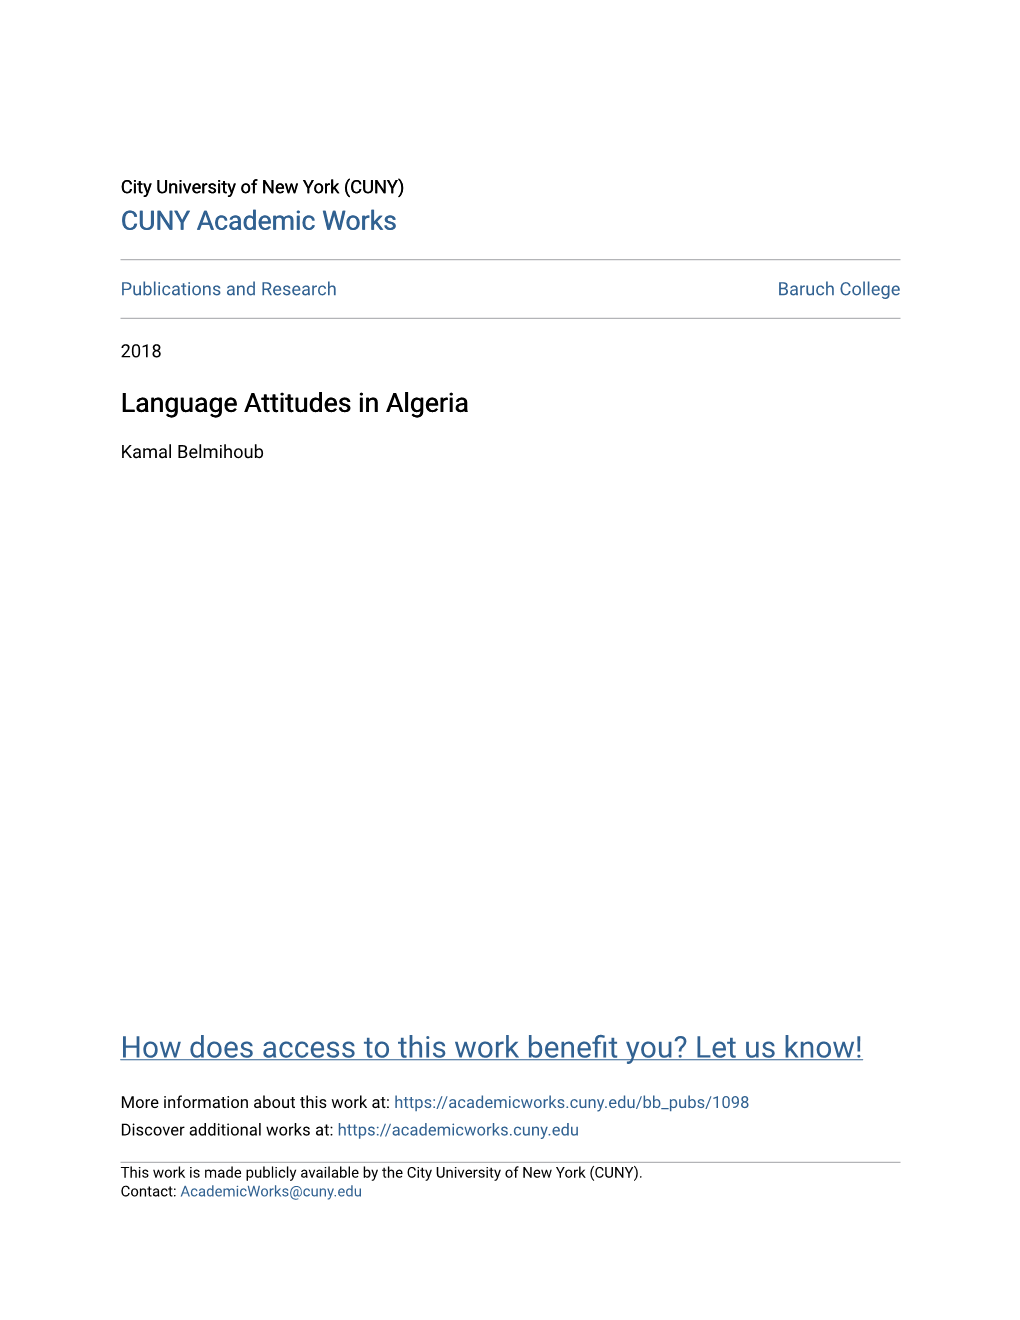 Language Attitudes in Algeria